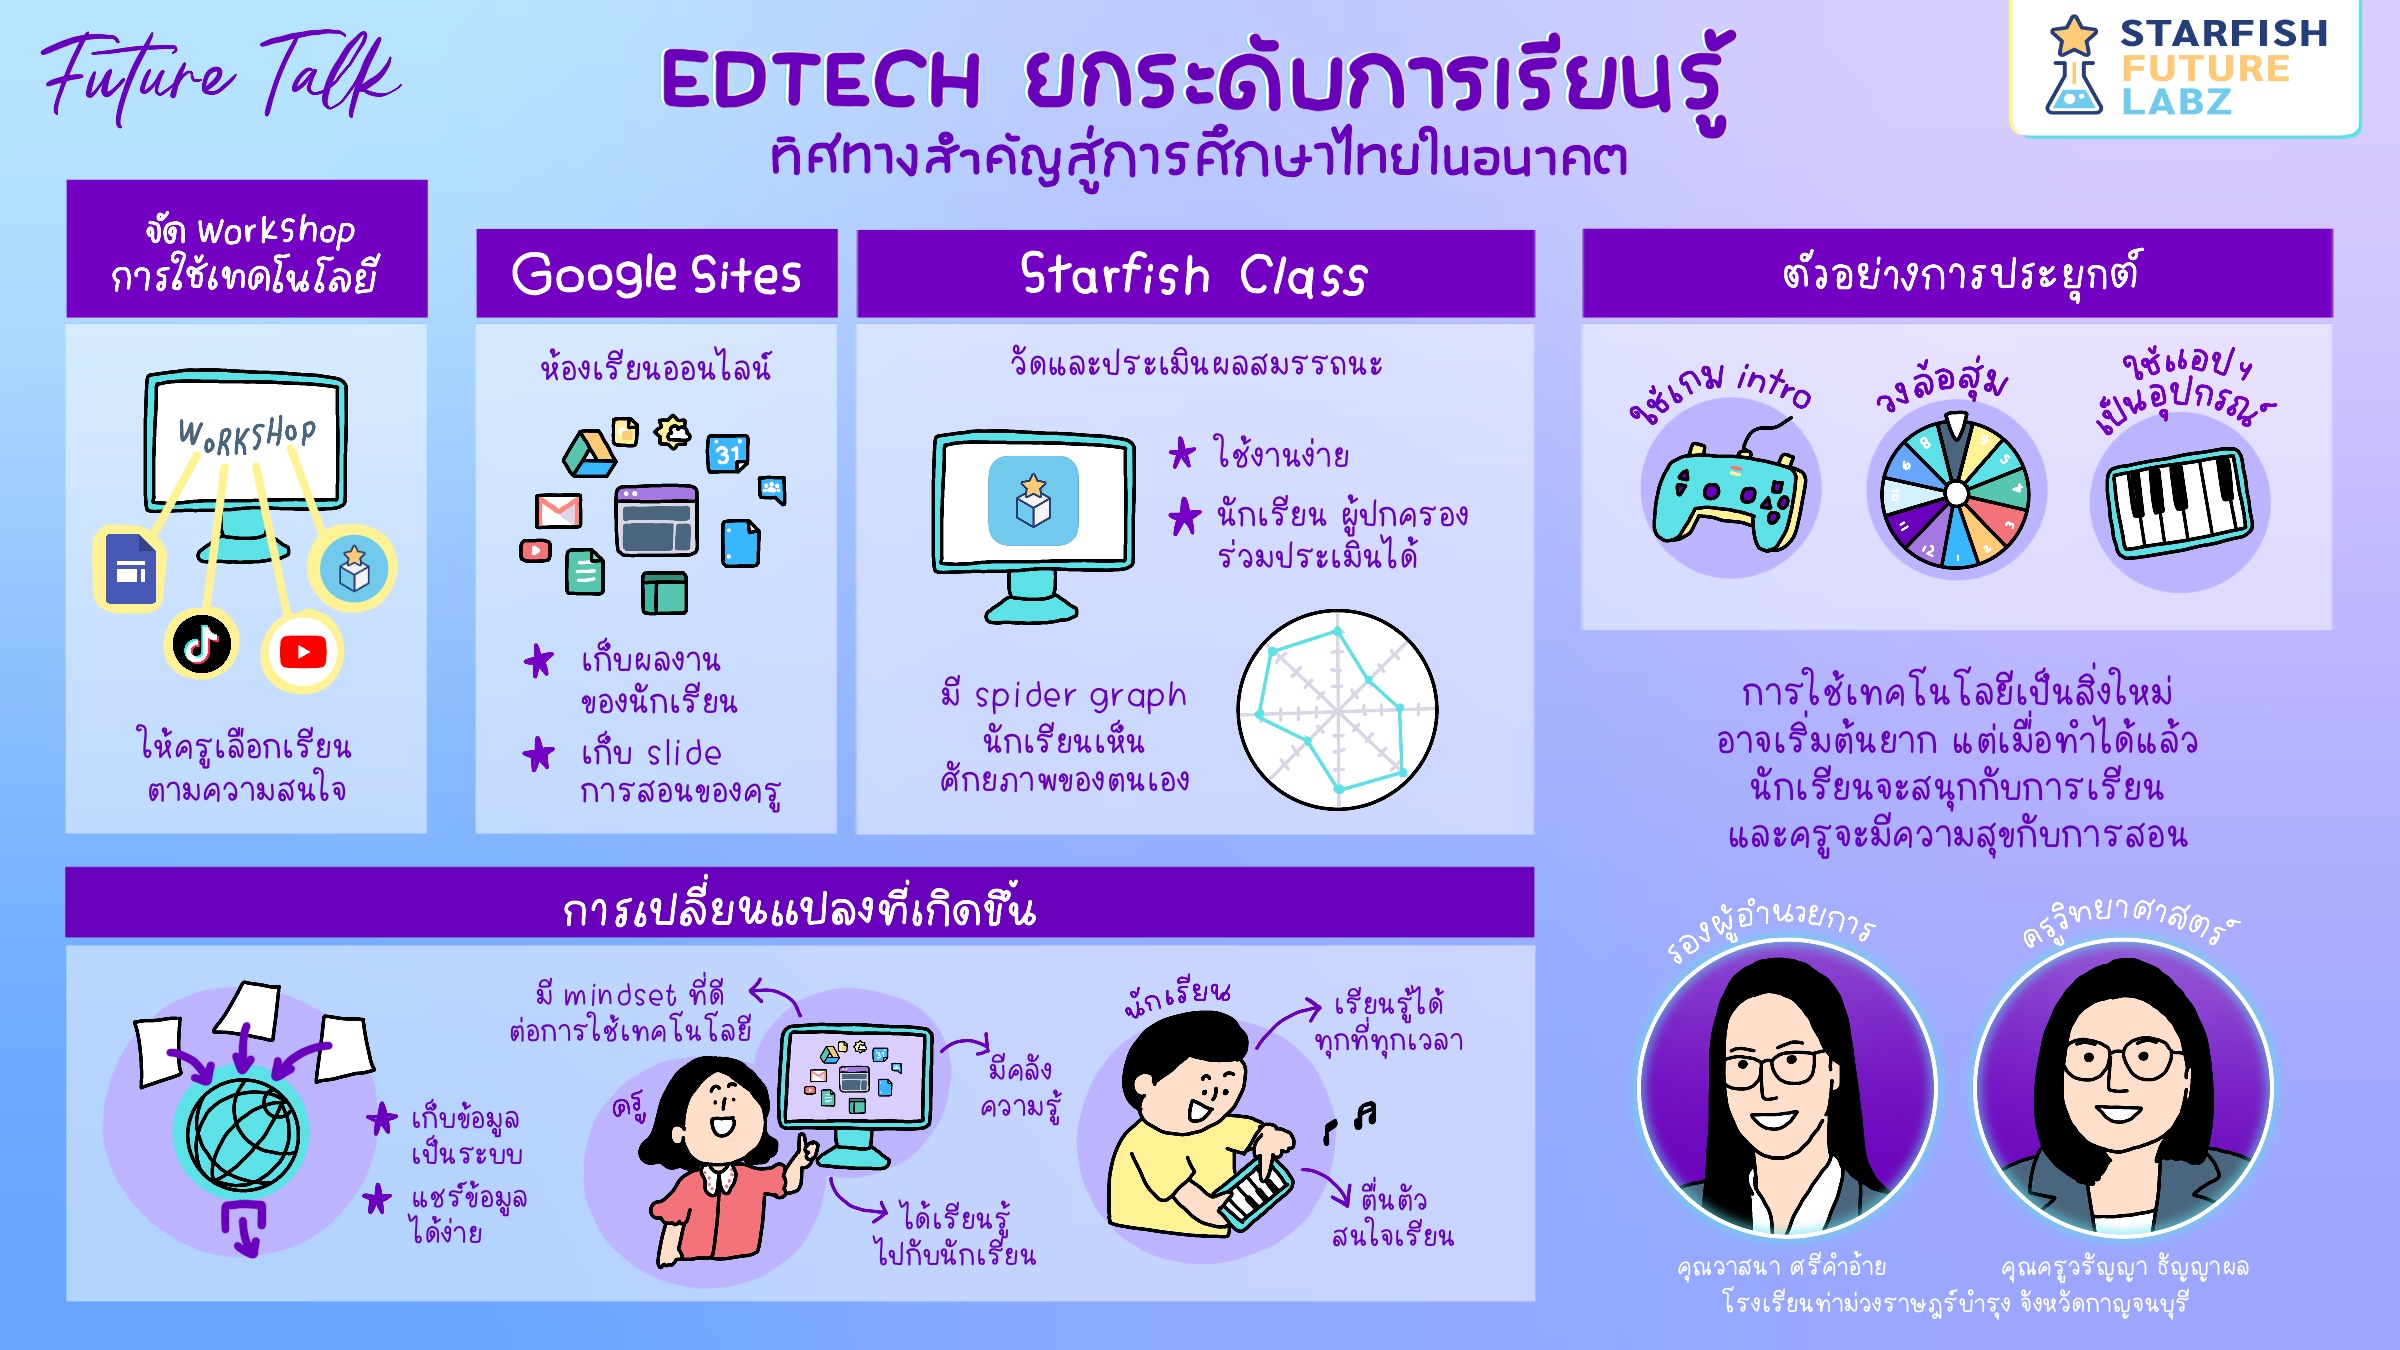 ยกระดับการเรียนรู้  ทิศทางสำคัญ สู่การศึกษาไทยในอนาคต